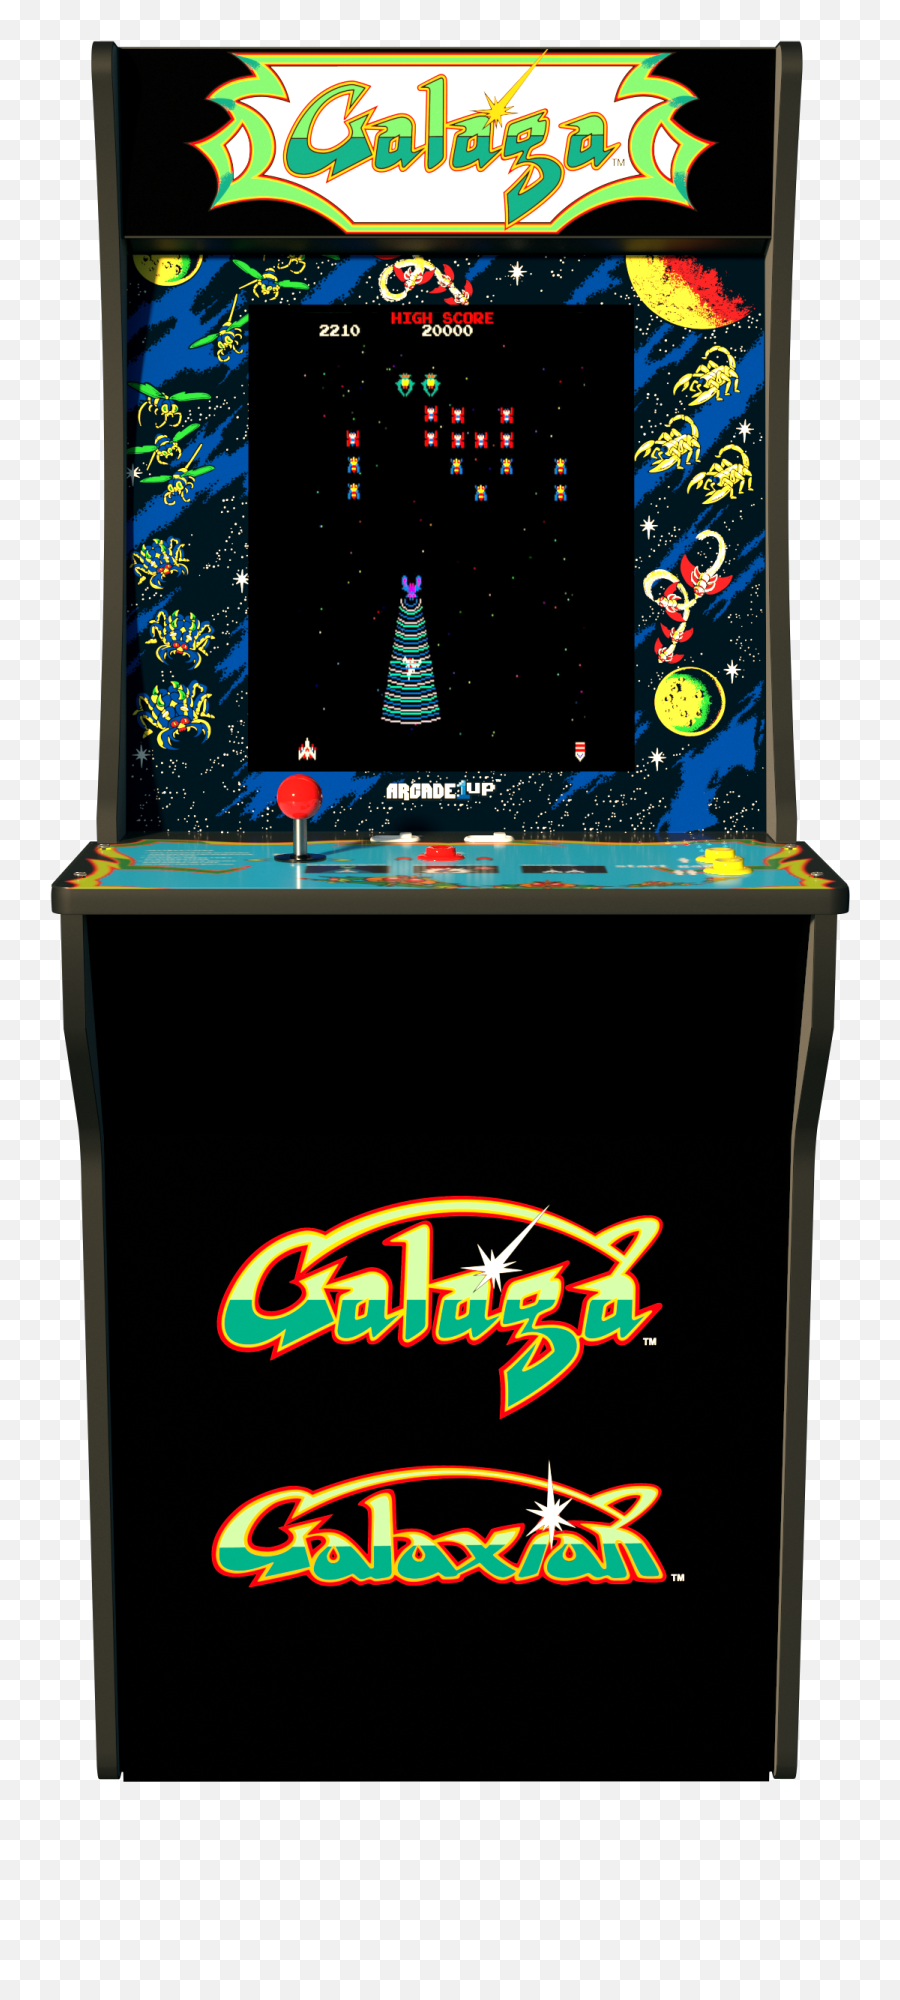 Galaga Arcade Machine Arcade1up 4ft - Galaga Arcade 1up Png,Galaga Ship Png